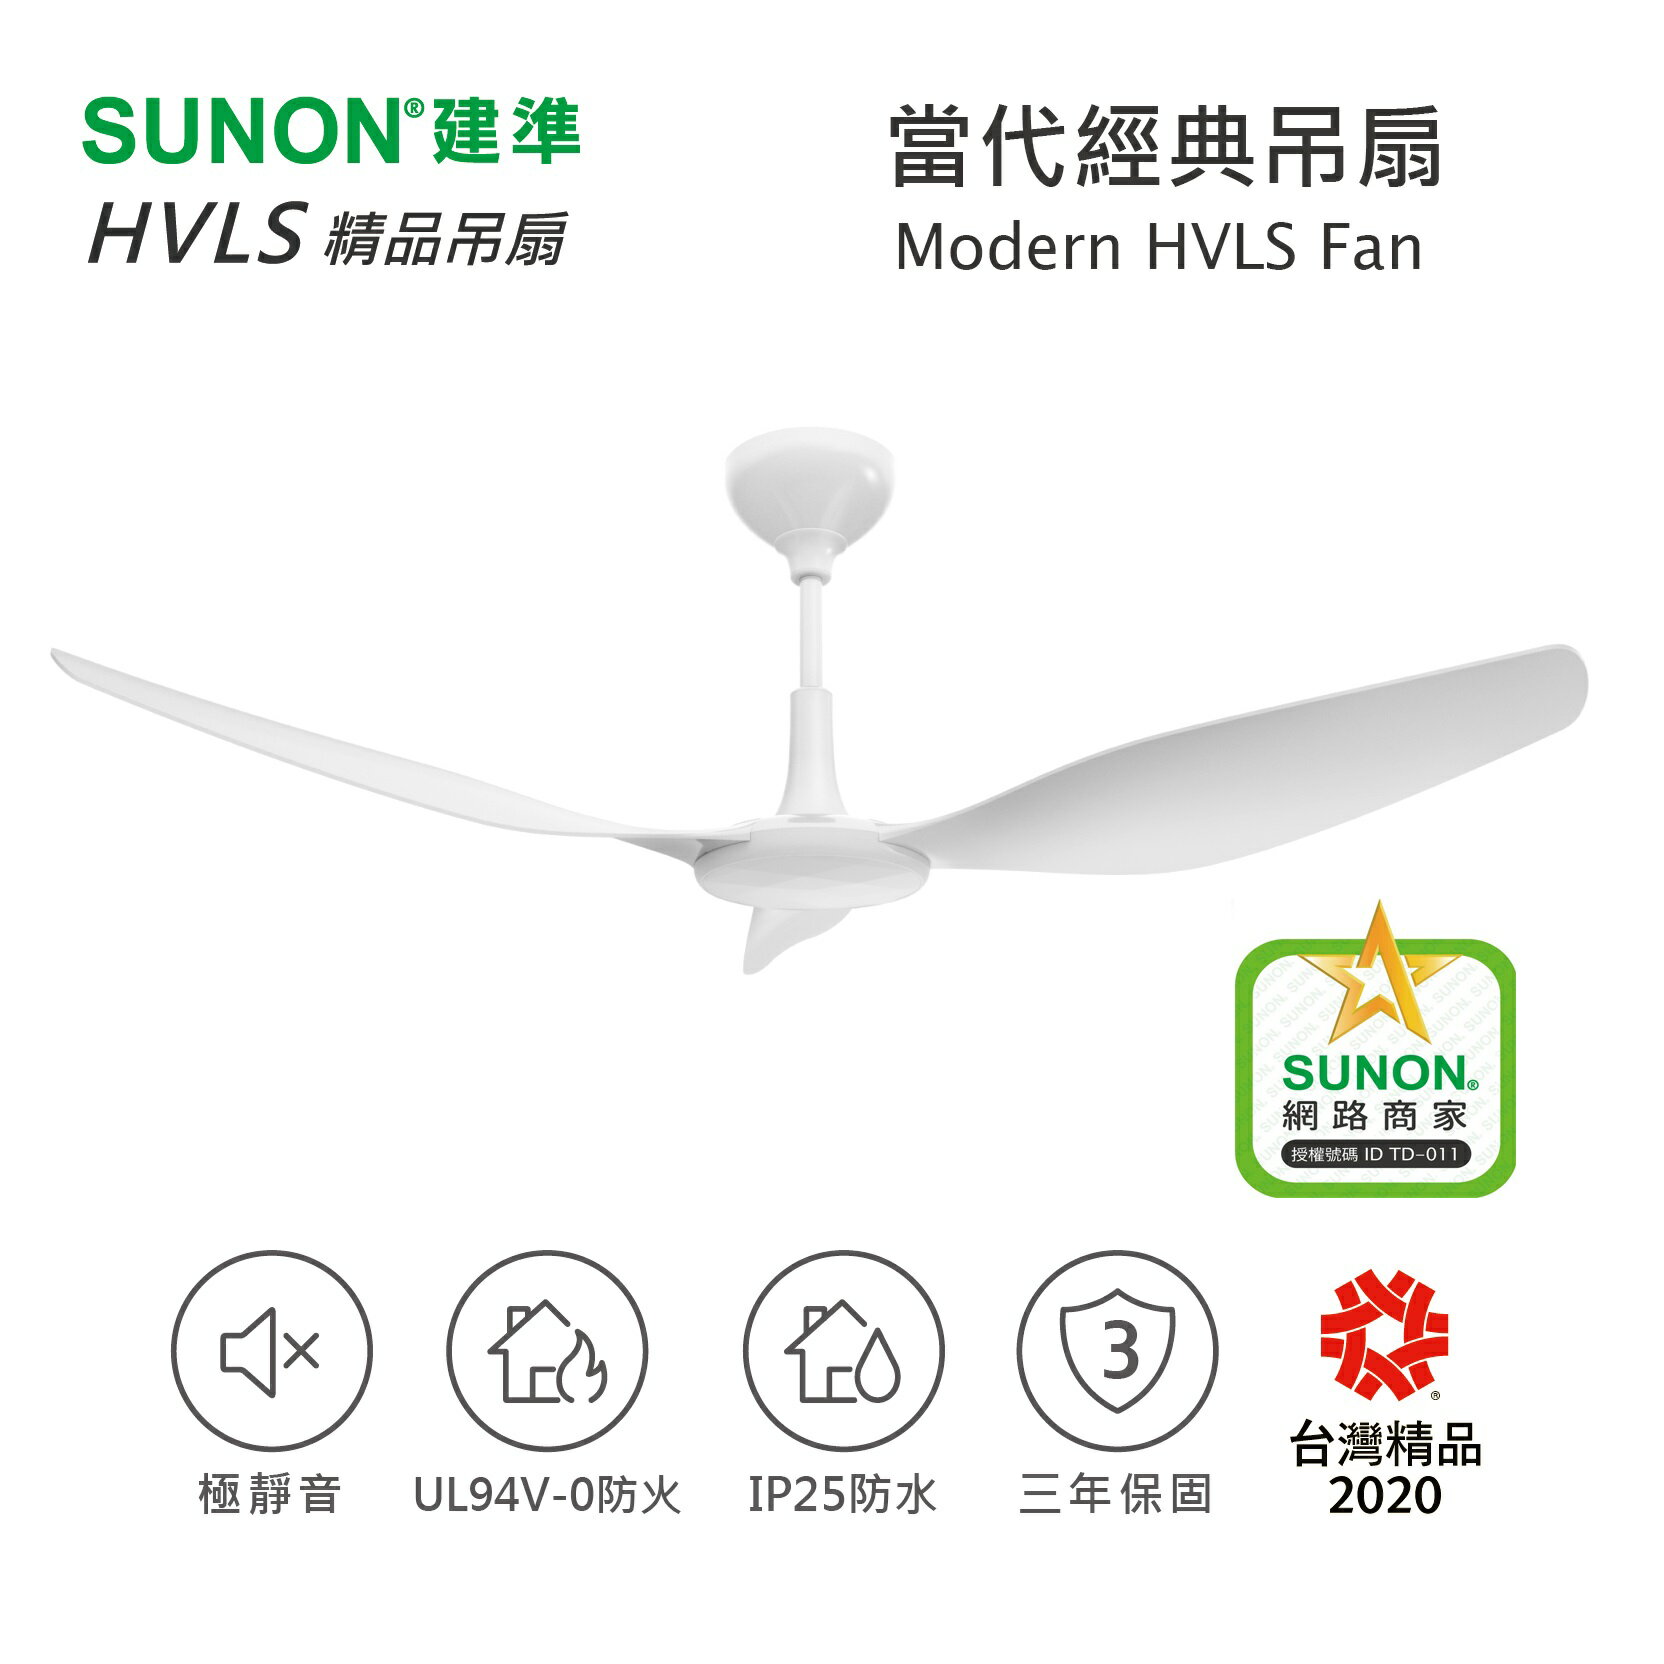 SUNON Modern HVLS Fan 吊扇 52吋 (1.32M) 六段轉速 DC直流 大角度扇葉 風扇 掛扇 省電 台灣製造